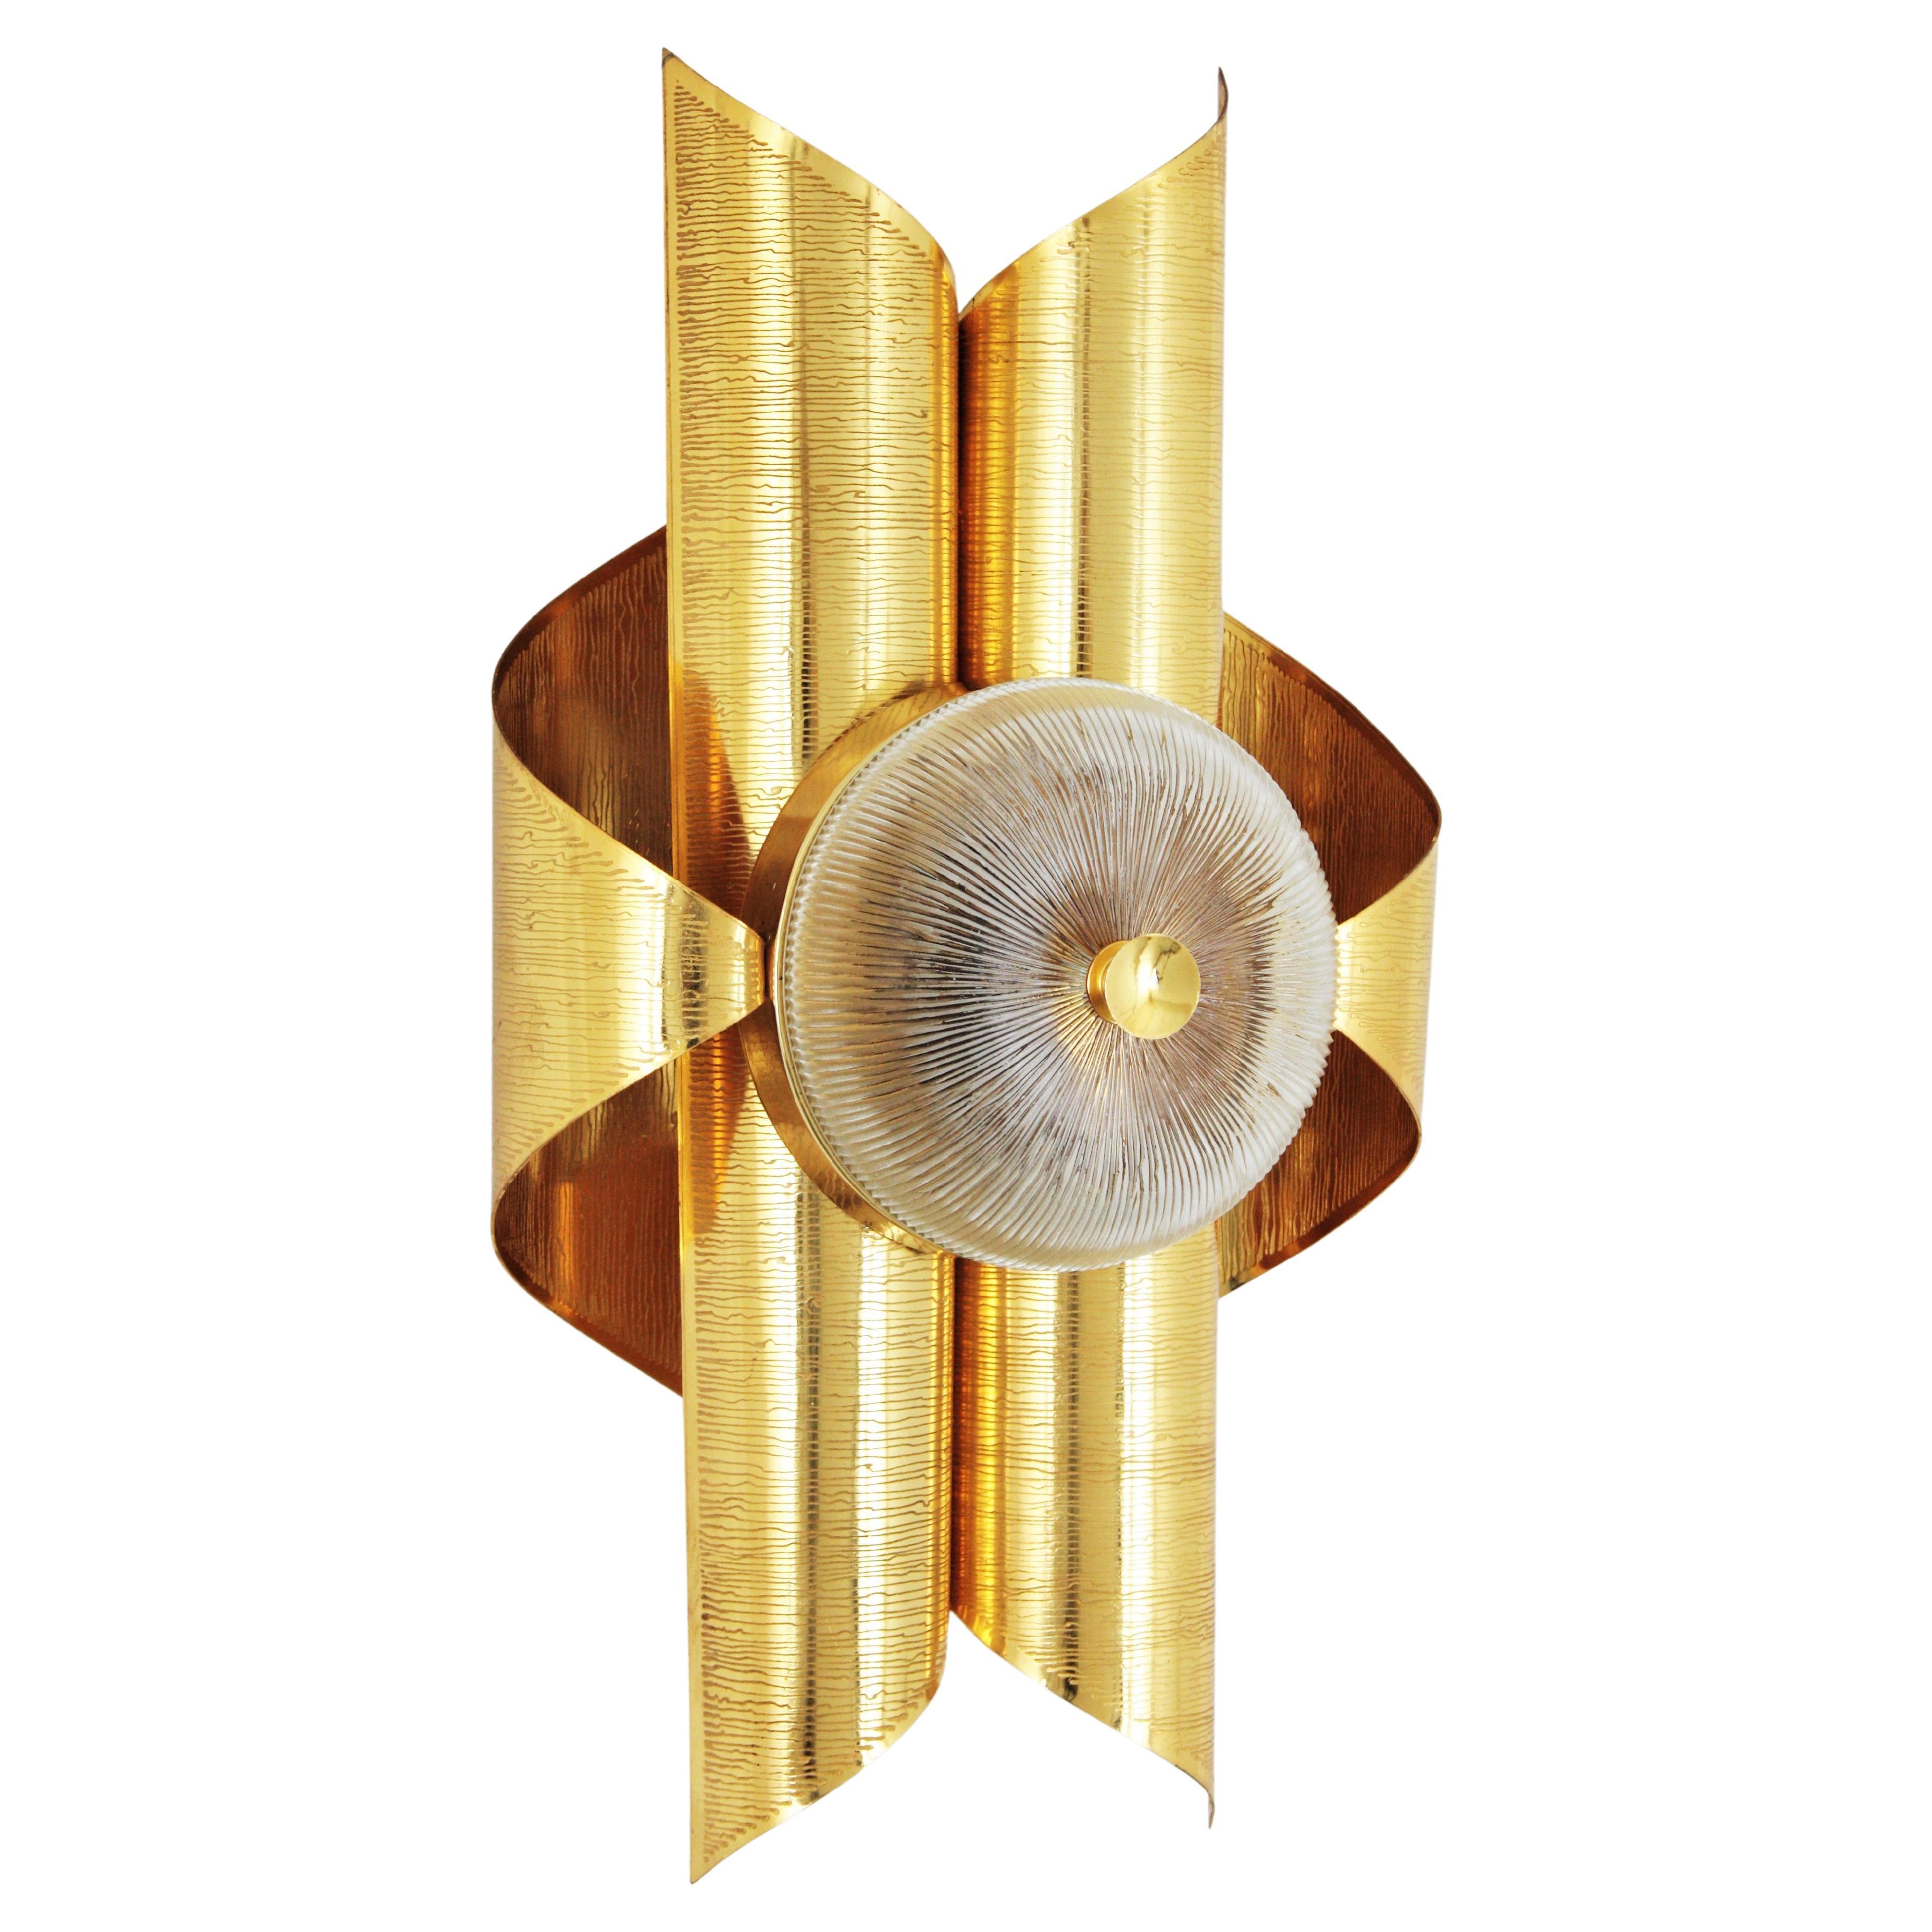 Sciolari inspiriert italienischen Modernist vergoldetem Messing und Glas Wandleuchter. Italien, 1960-1970.
Ein schöner Wandleuchter aus vergoldetem Messing und Glas in Form einer Schnecke mit einem runden Glasschirm, 
Diese Wandleuchte hat ein